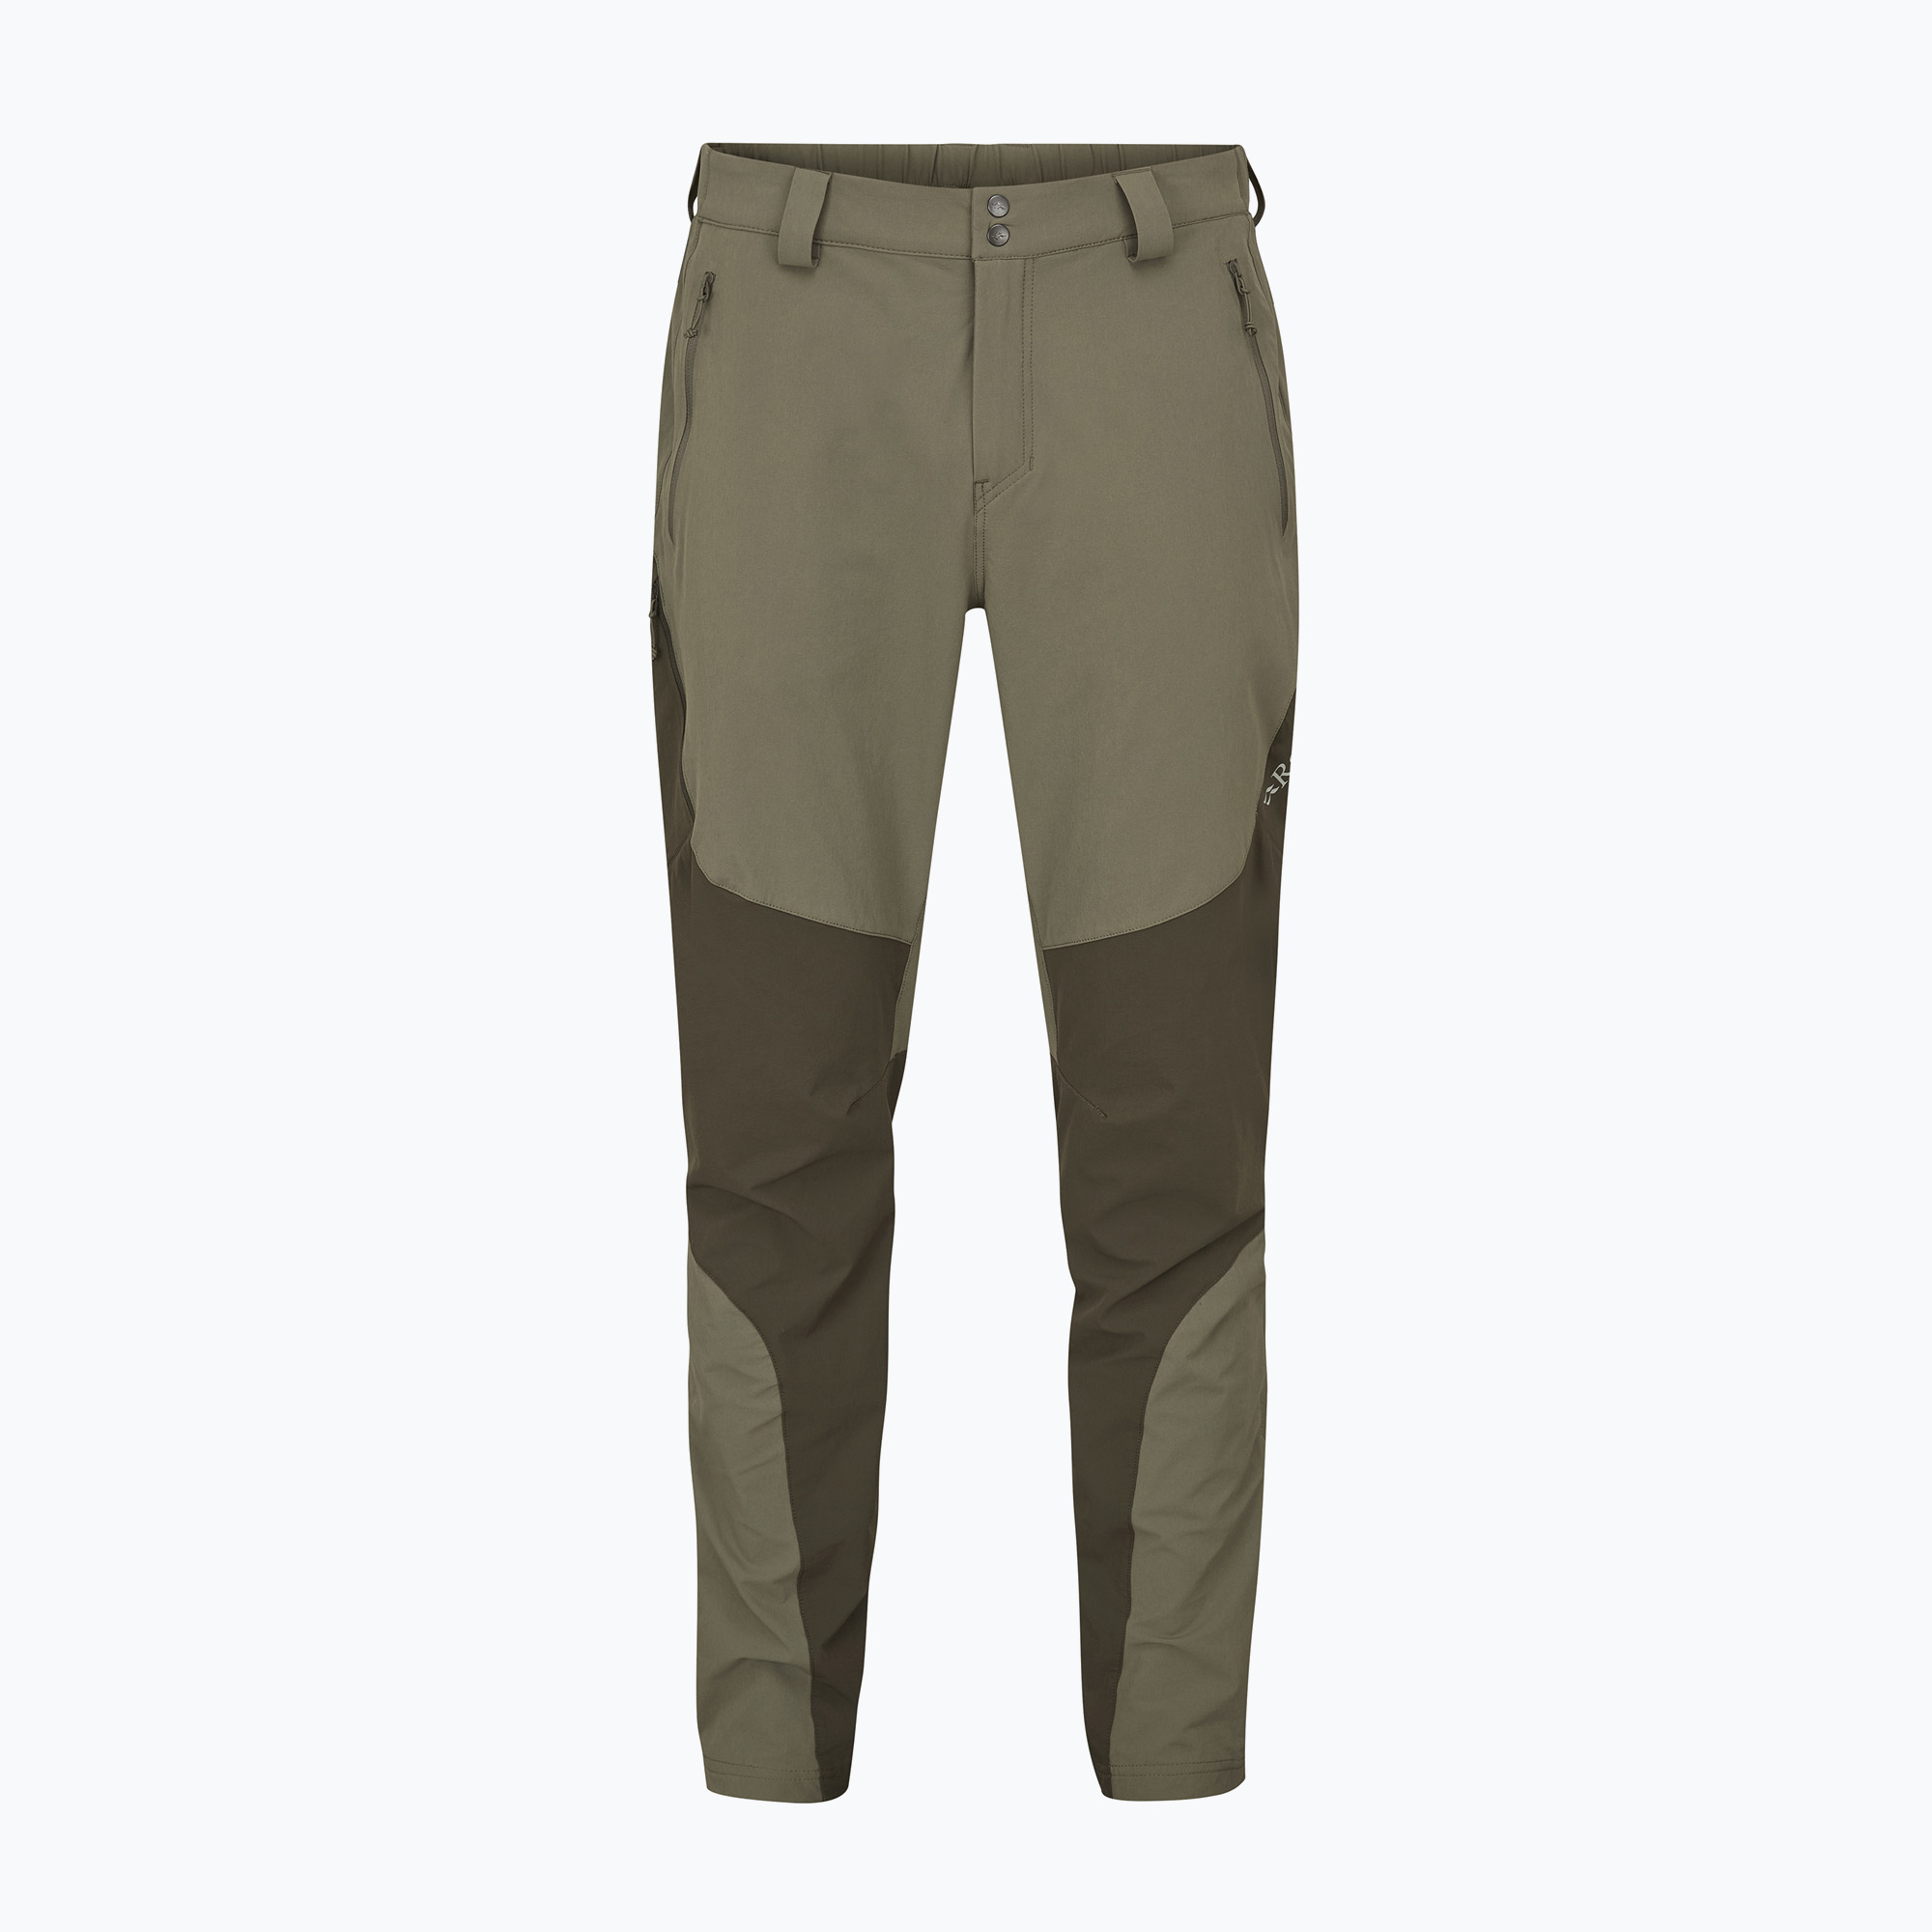 Rab Torque Mountain pantaloni softshell pentru bărbați, kaki deschis/armată